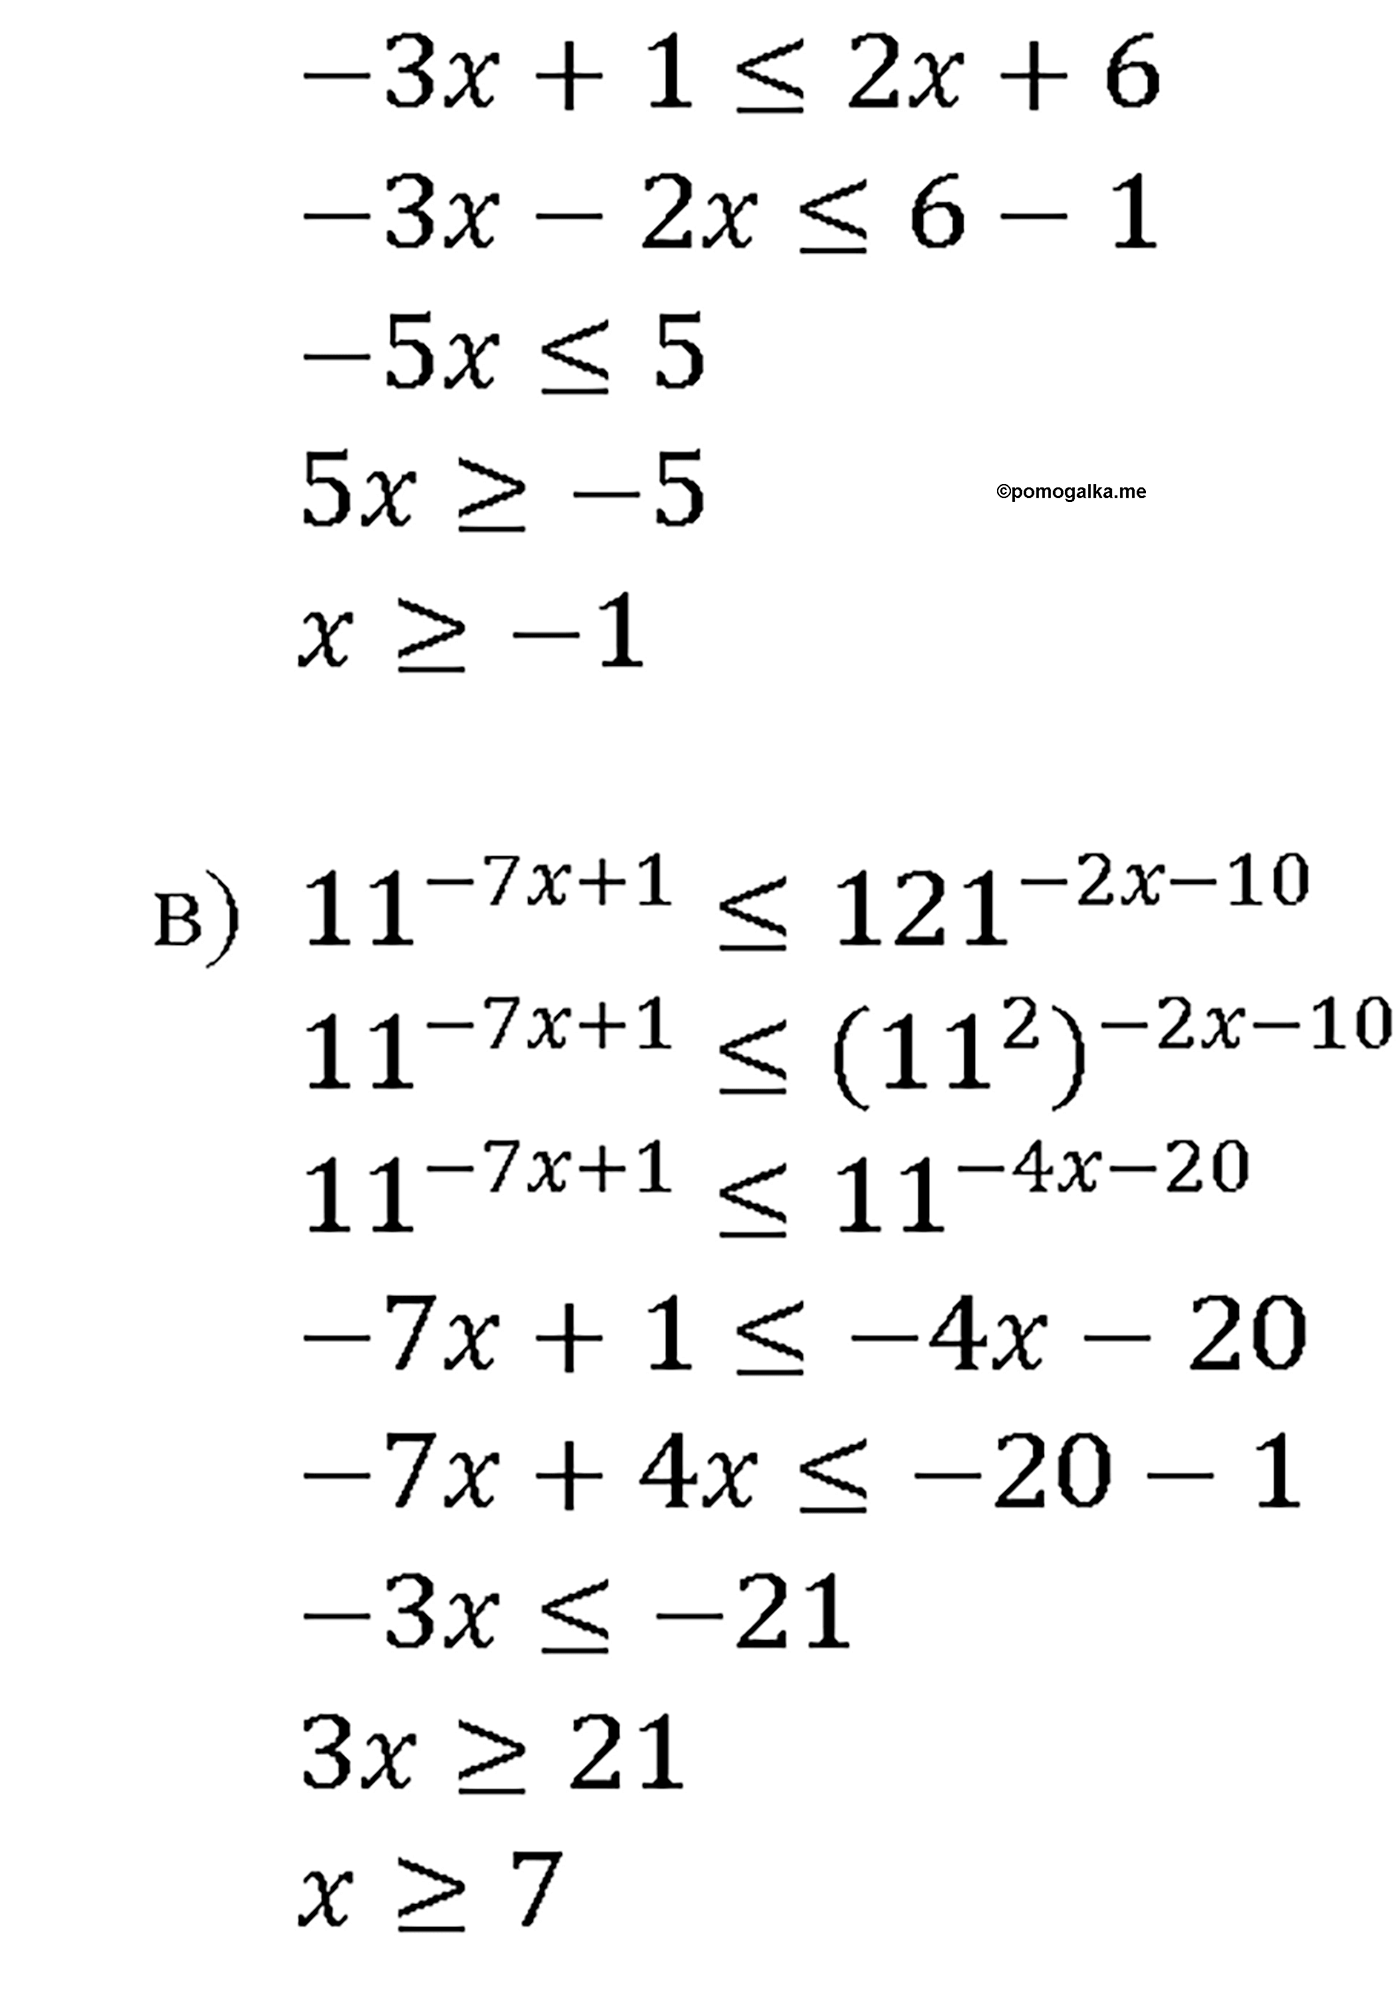 задача №40.34 алгебра 10-11 класс Мордкович